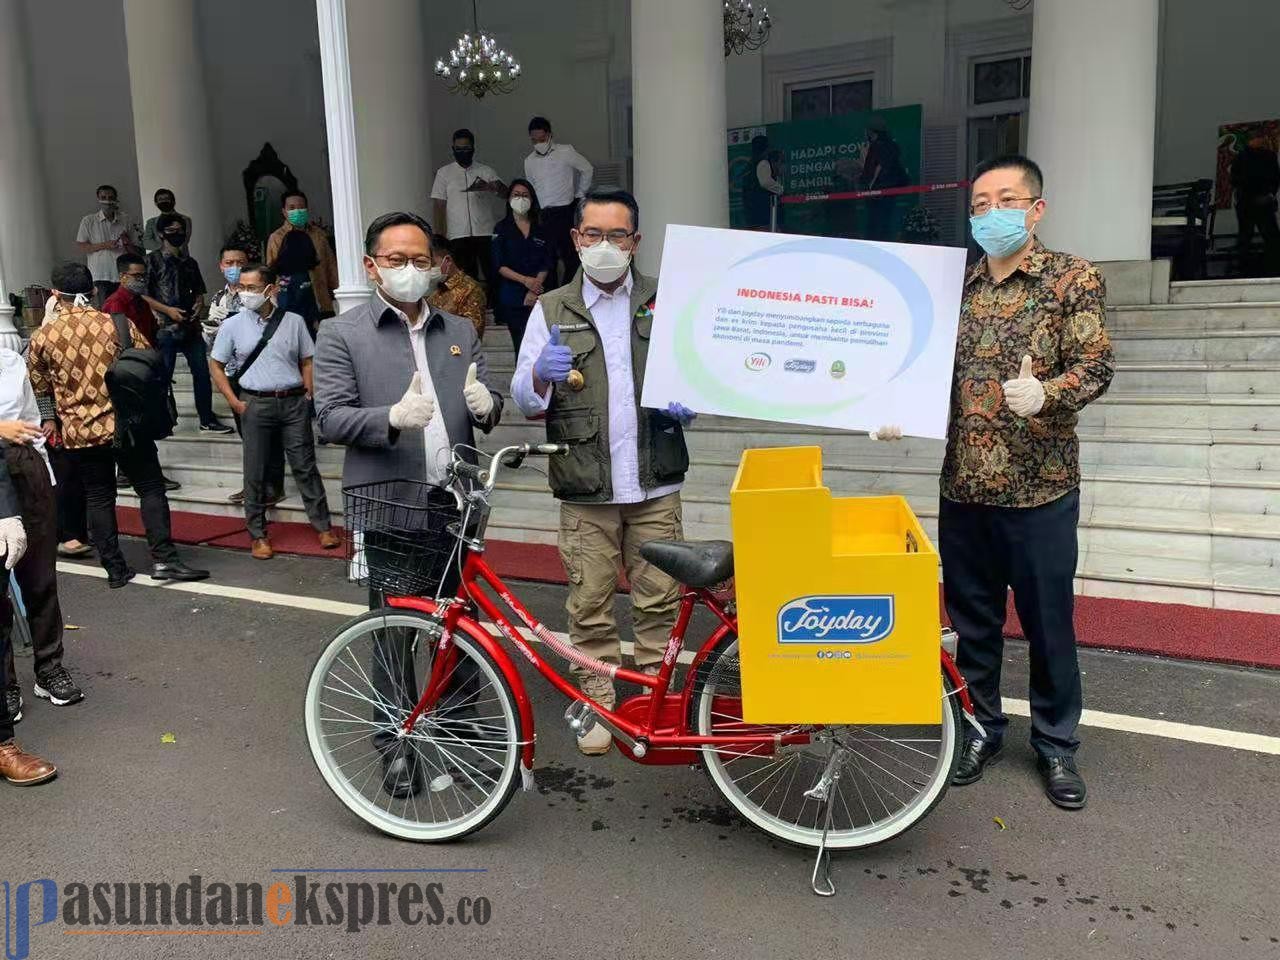 Joyday Meluncurkan Program “Bike For Care” Bagi Pedagang Kecil Terdampak Pandemi